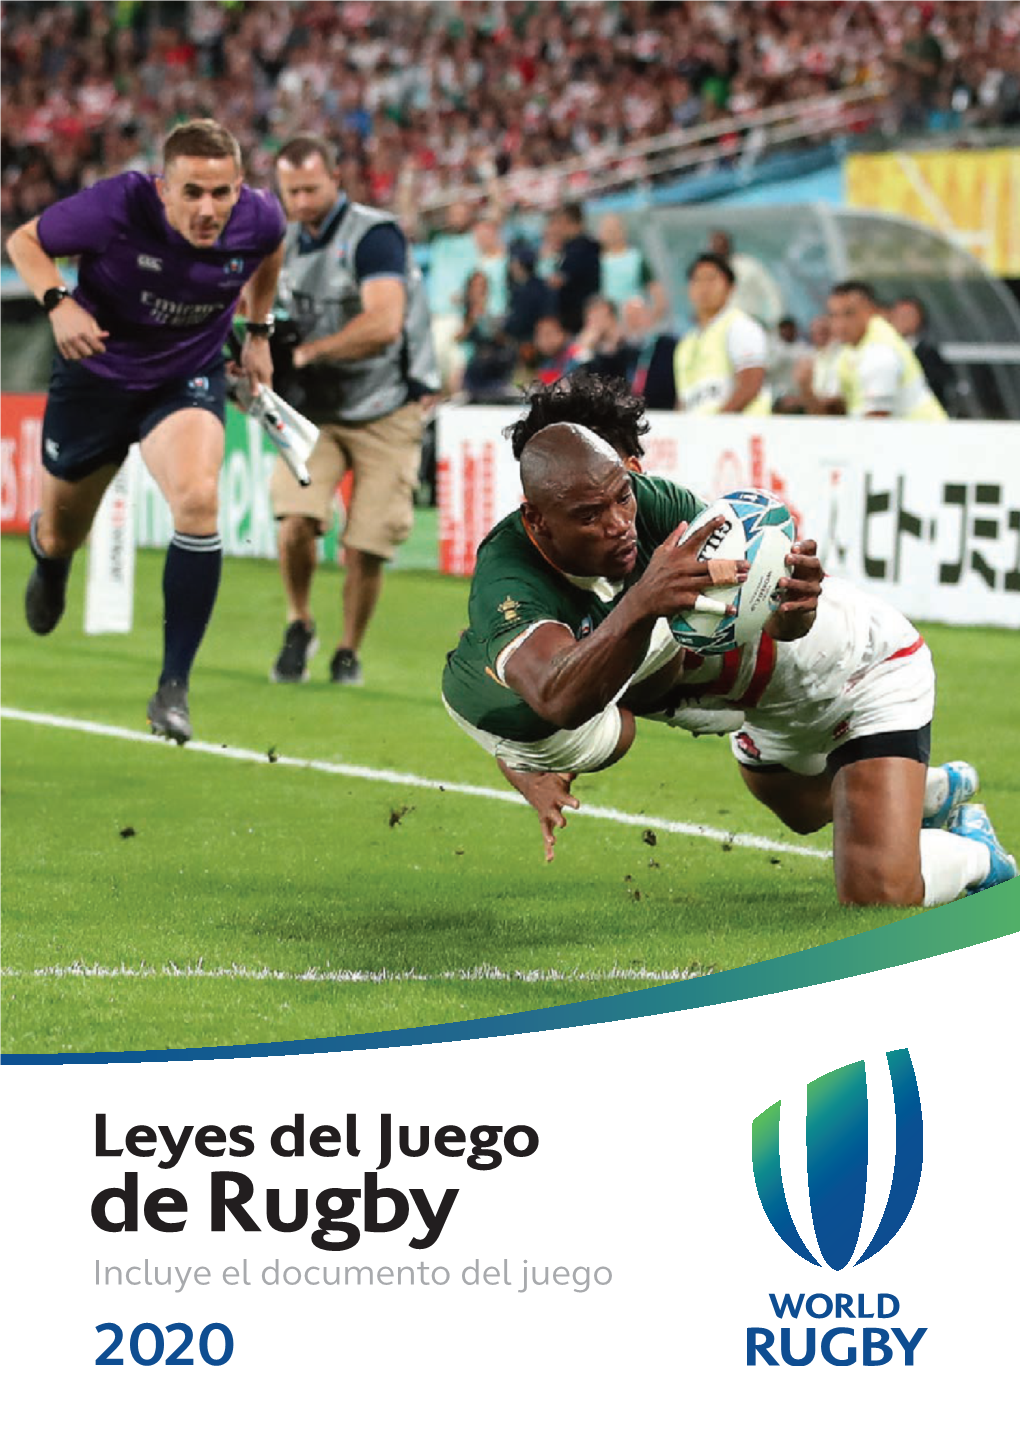 Leyes Del Juego De Rugby Incluye El Documento Del Juego 2020 Copyright © World Rugby 2020